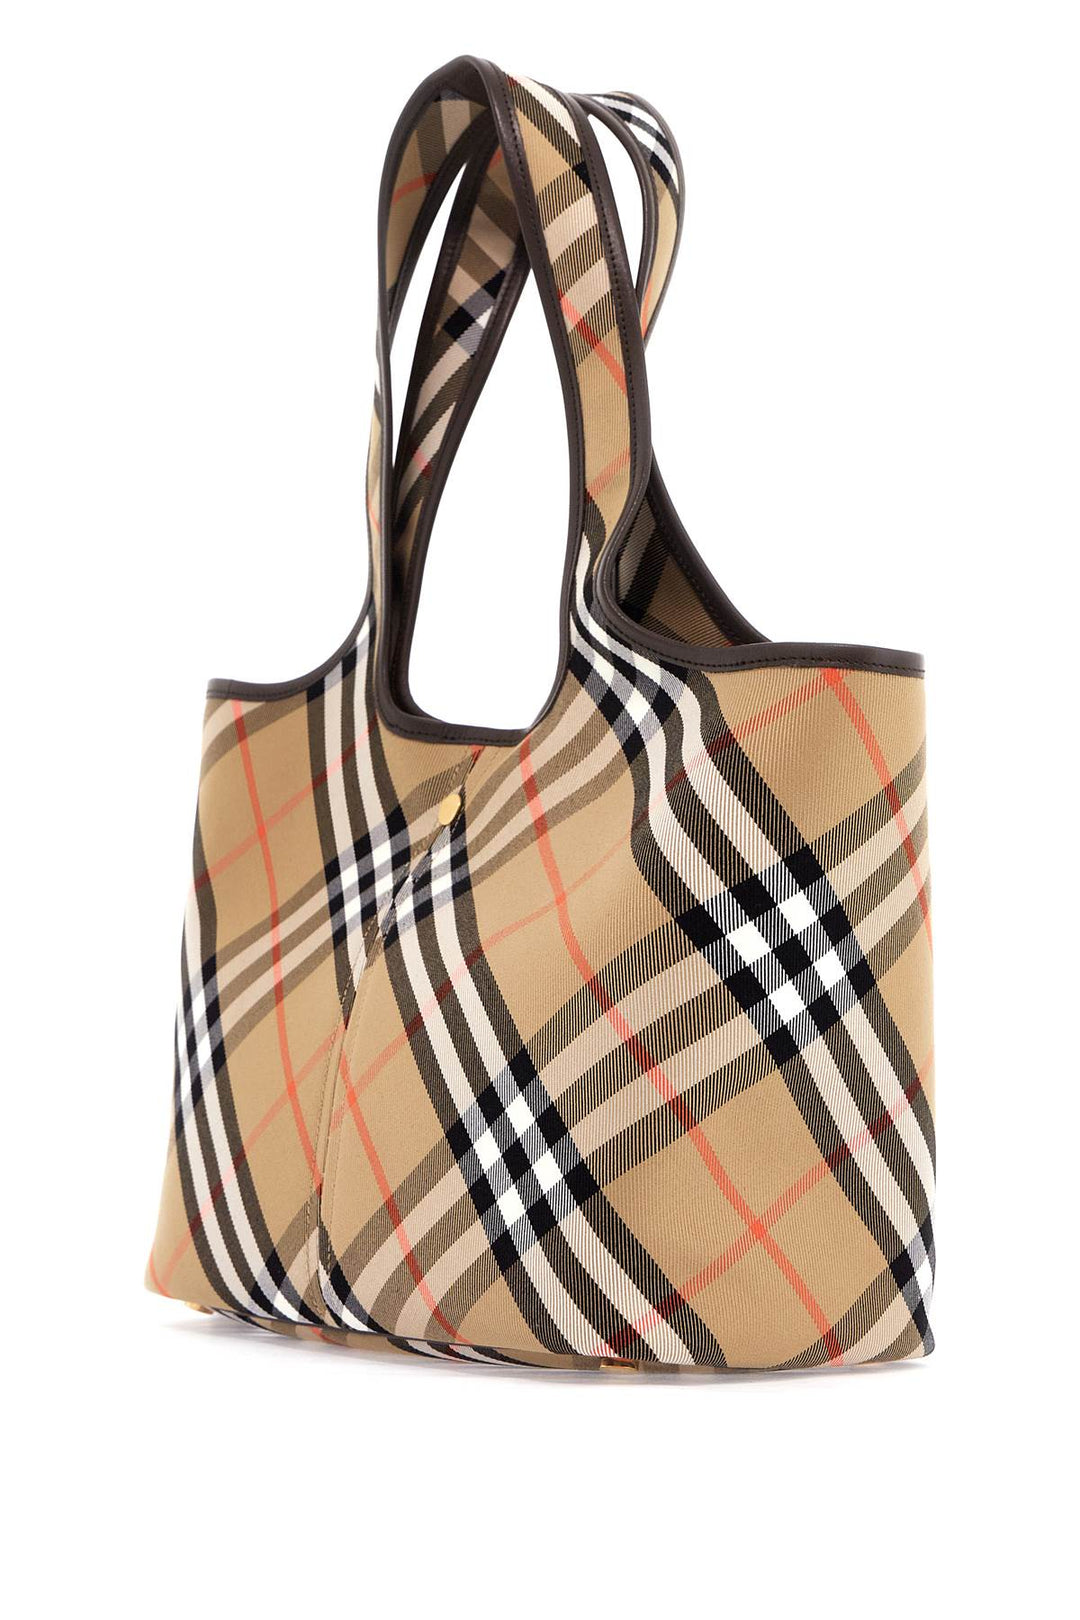 Burberry Ered\N\Nsmall Checkered Tote Bag   Beige